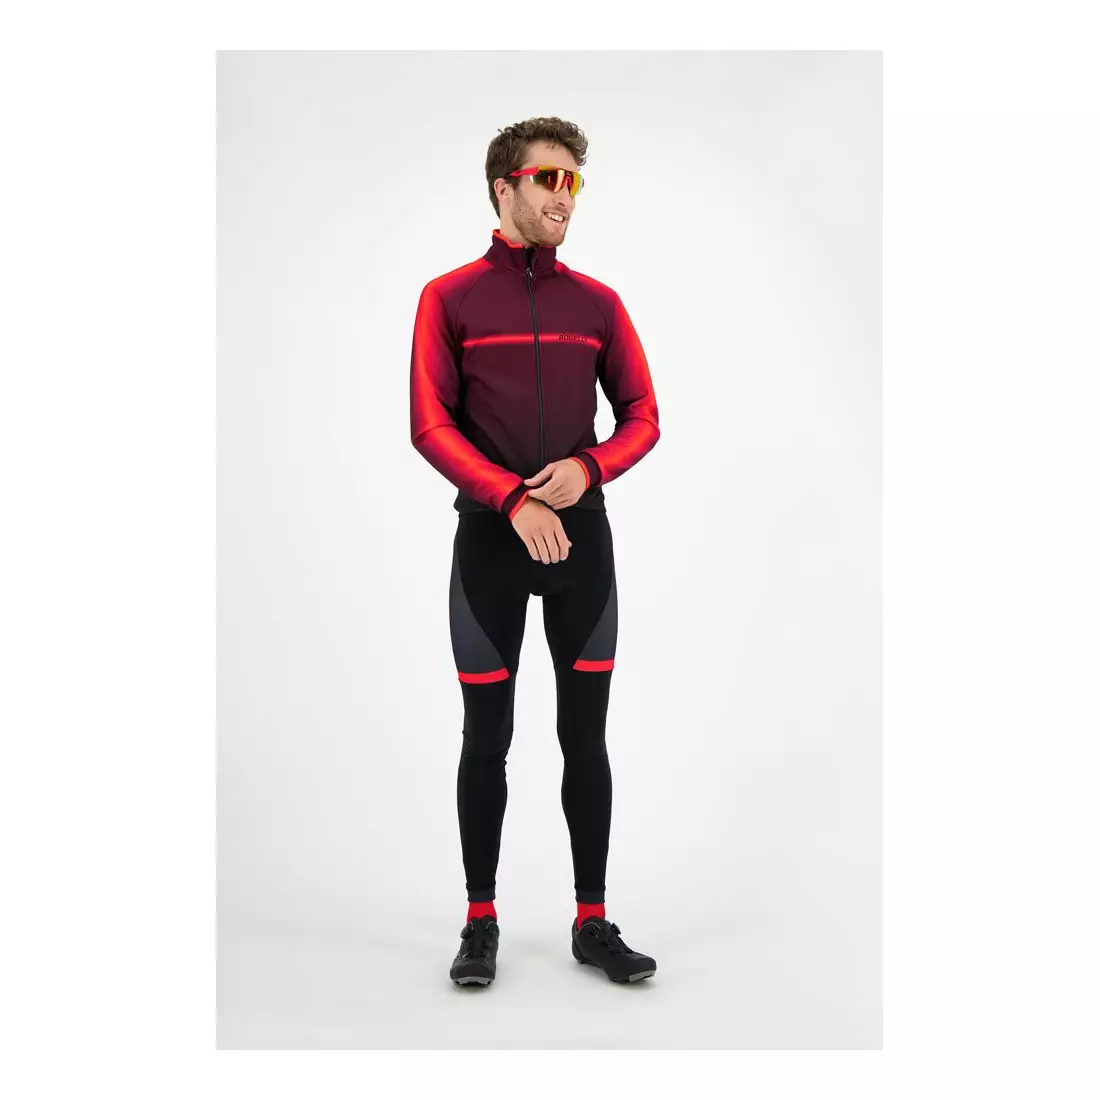 ROGELLI pantaloni de bicicletă pentru bărbați cu bretele FUSE red